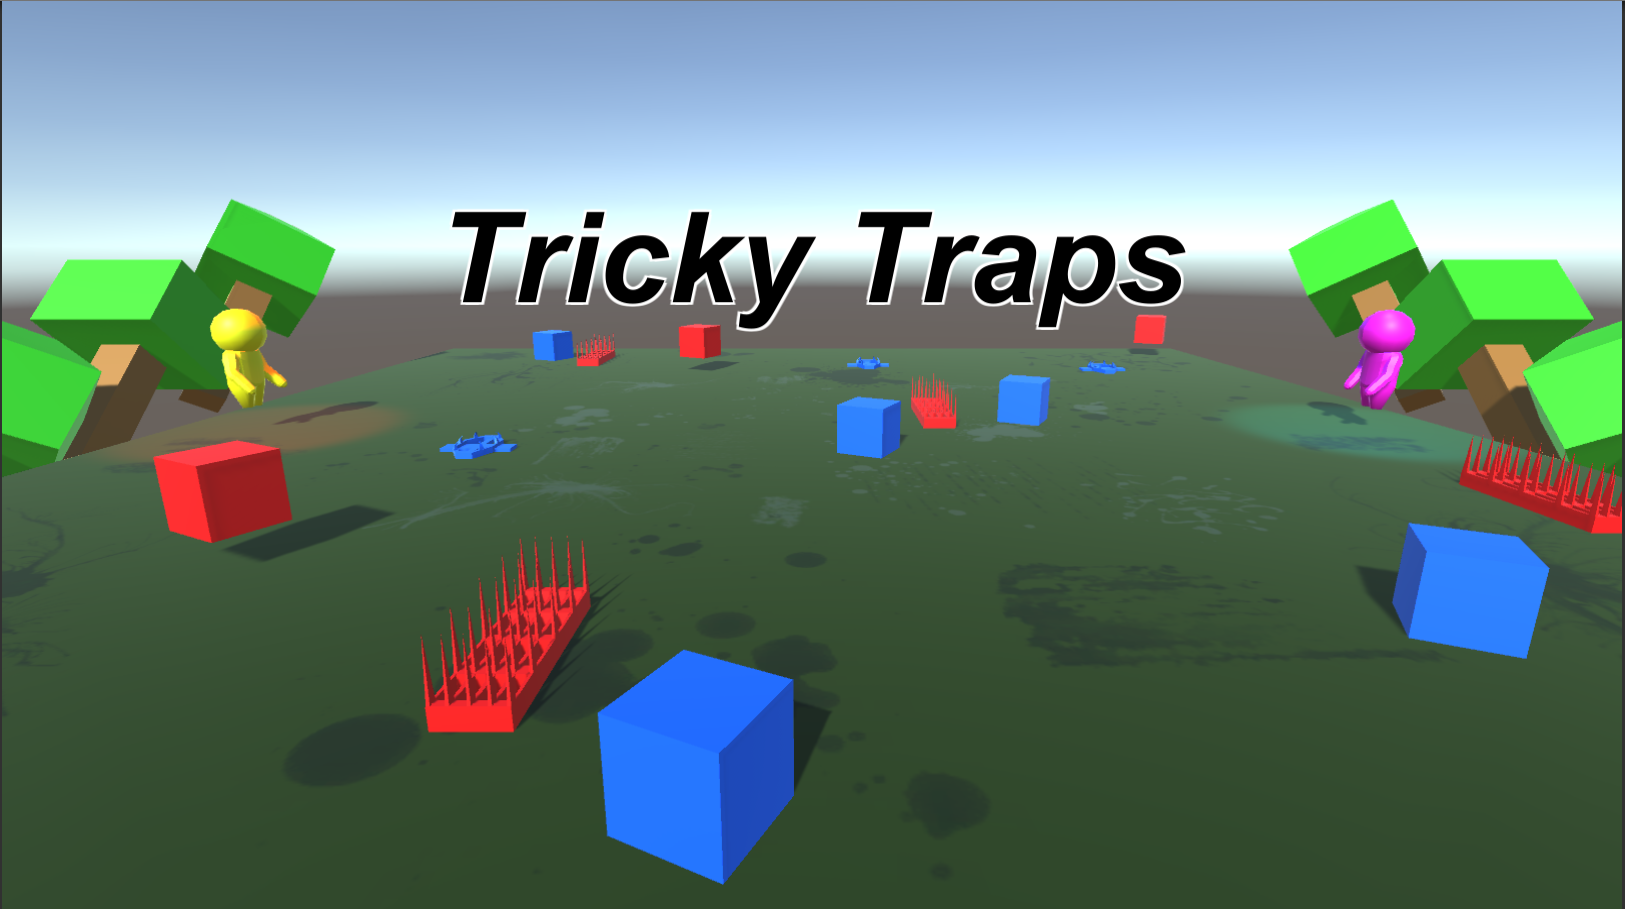 Tricky Traps